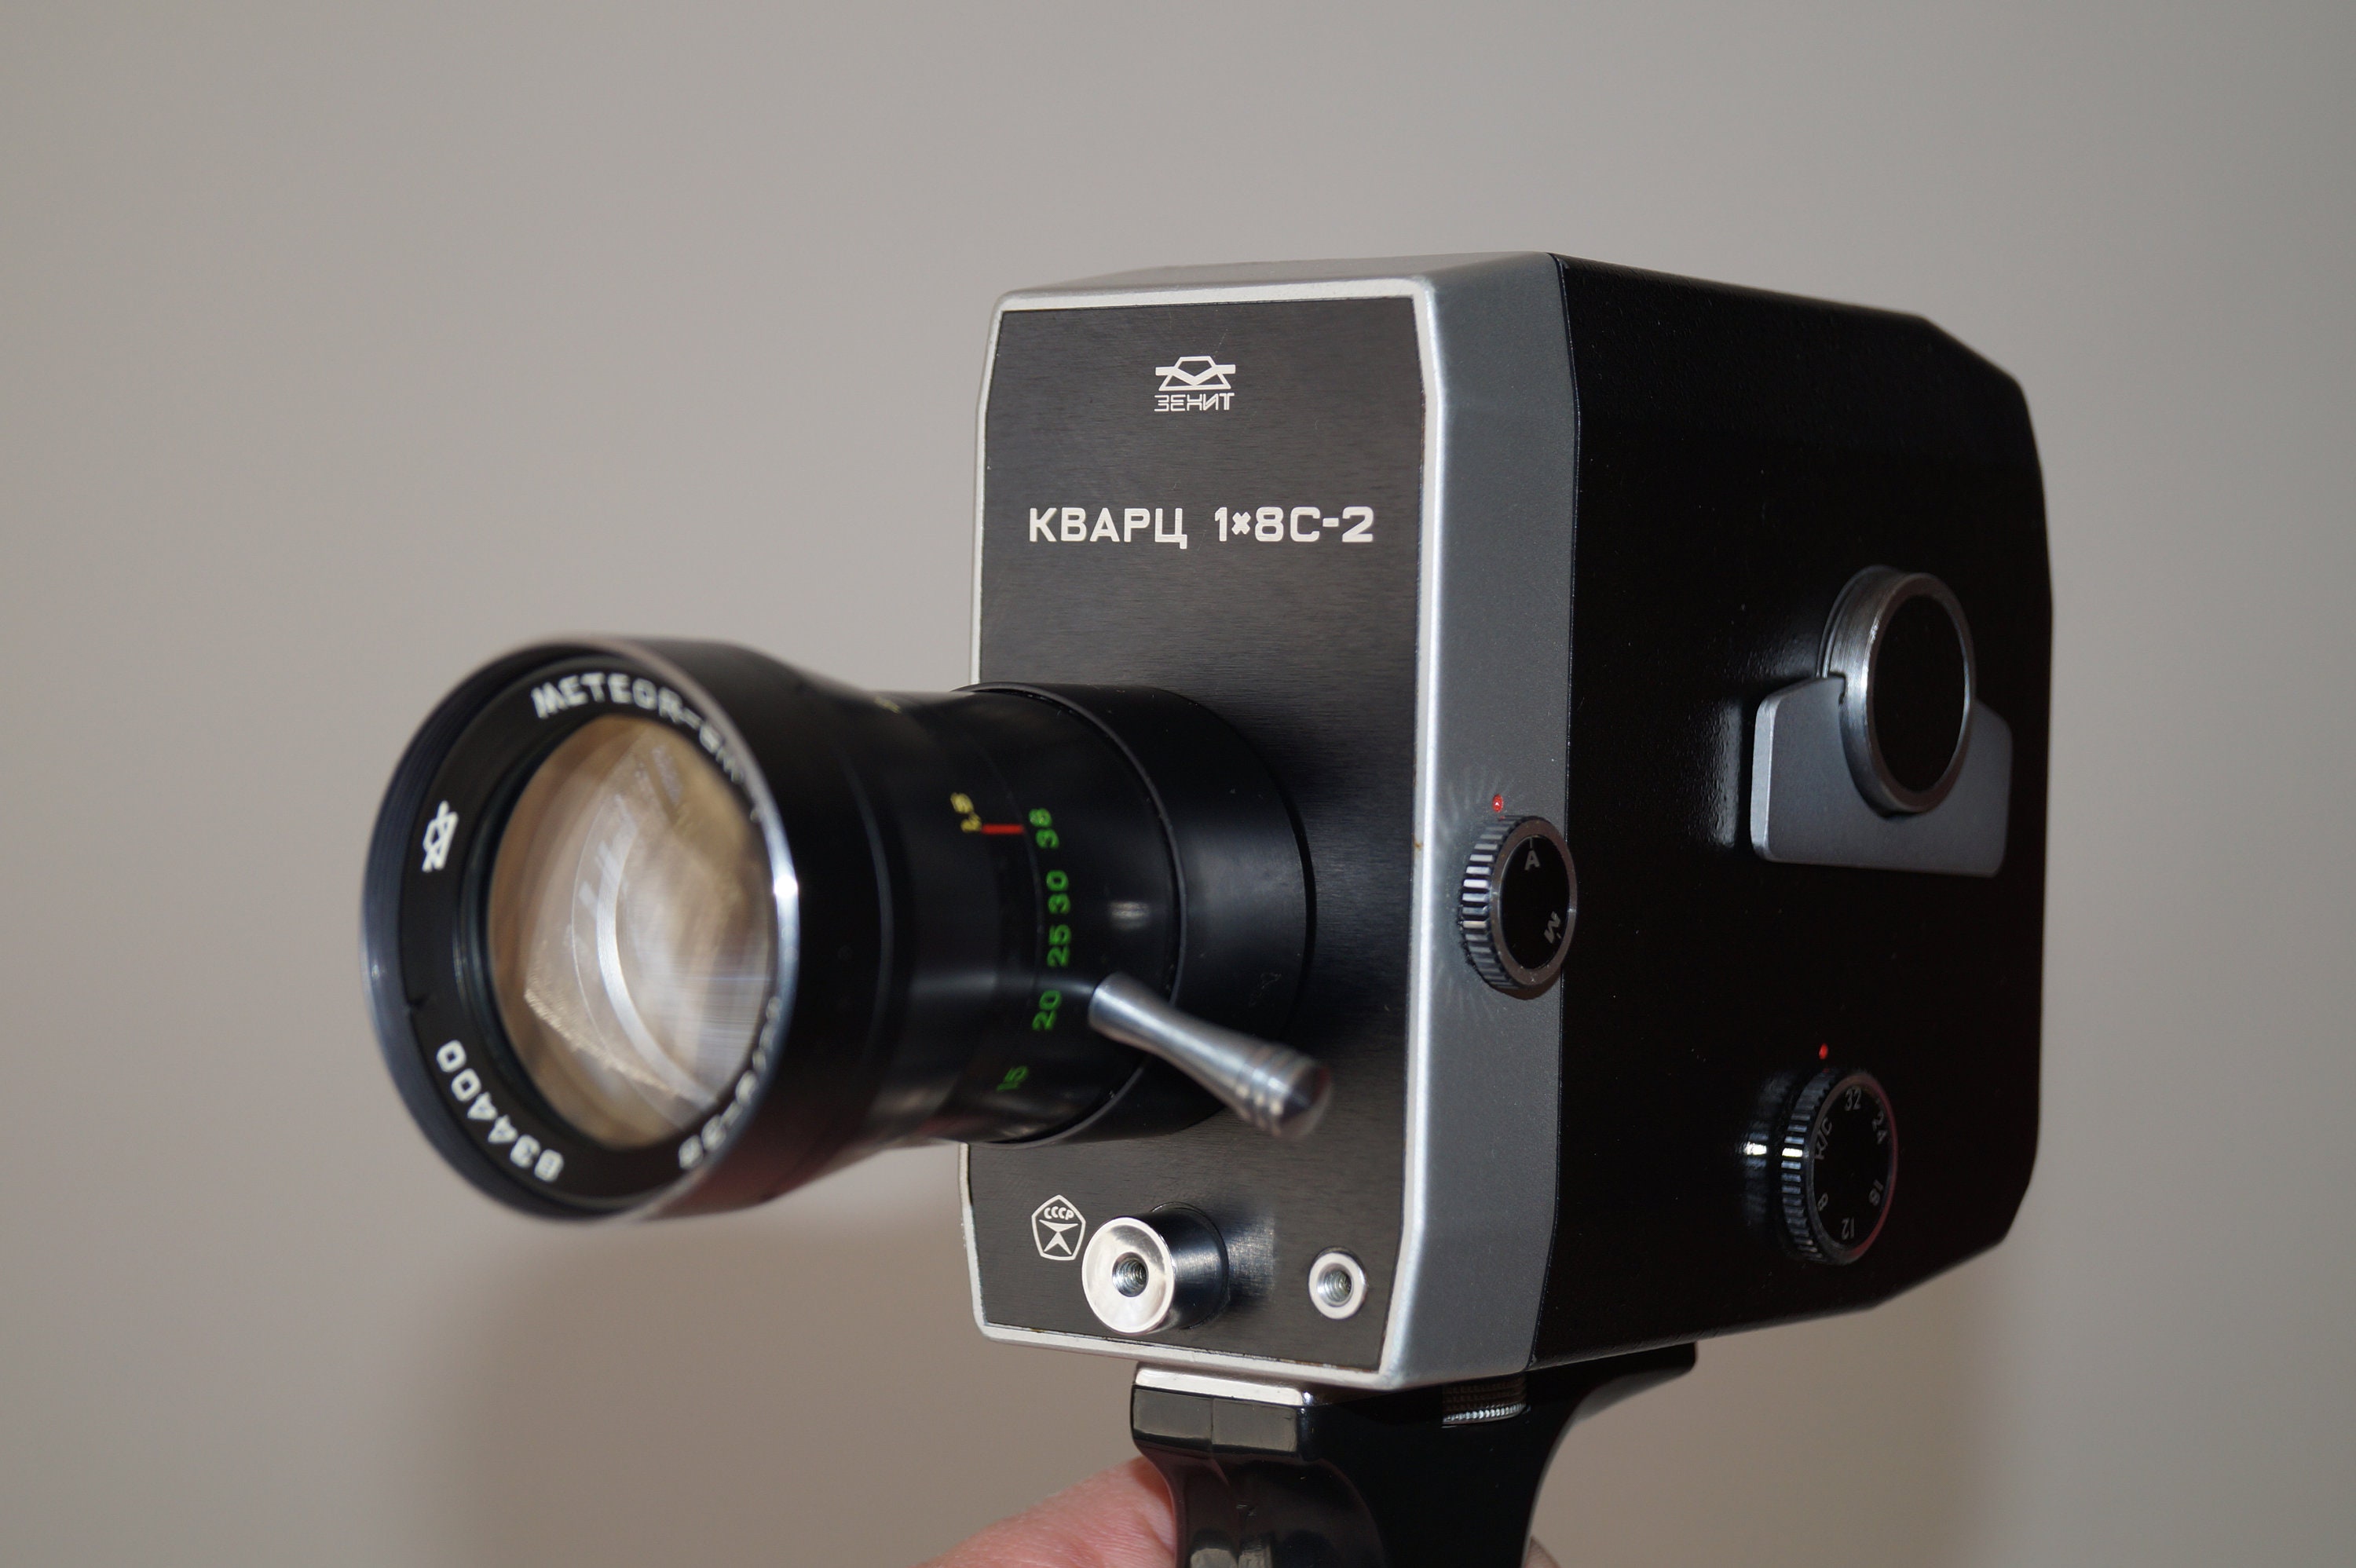 Cine Camera Quartz Soviet Movie Camera Quartz 1-8 С-2 Cine